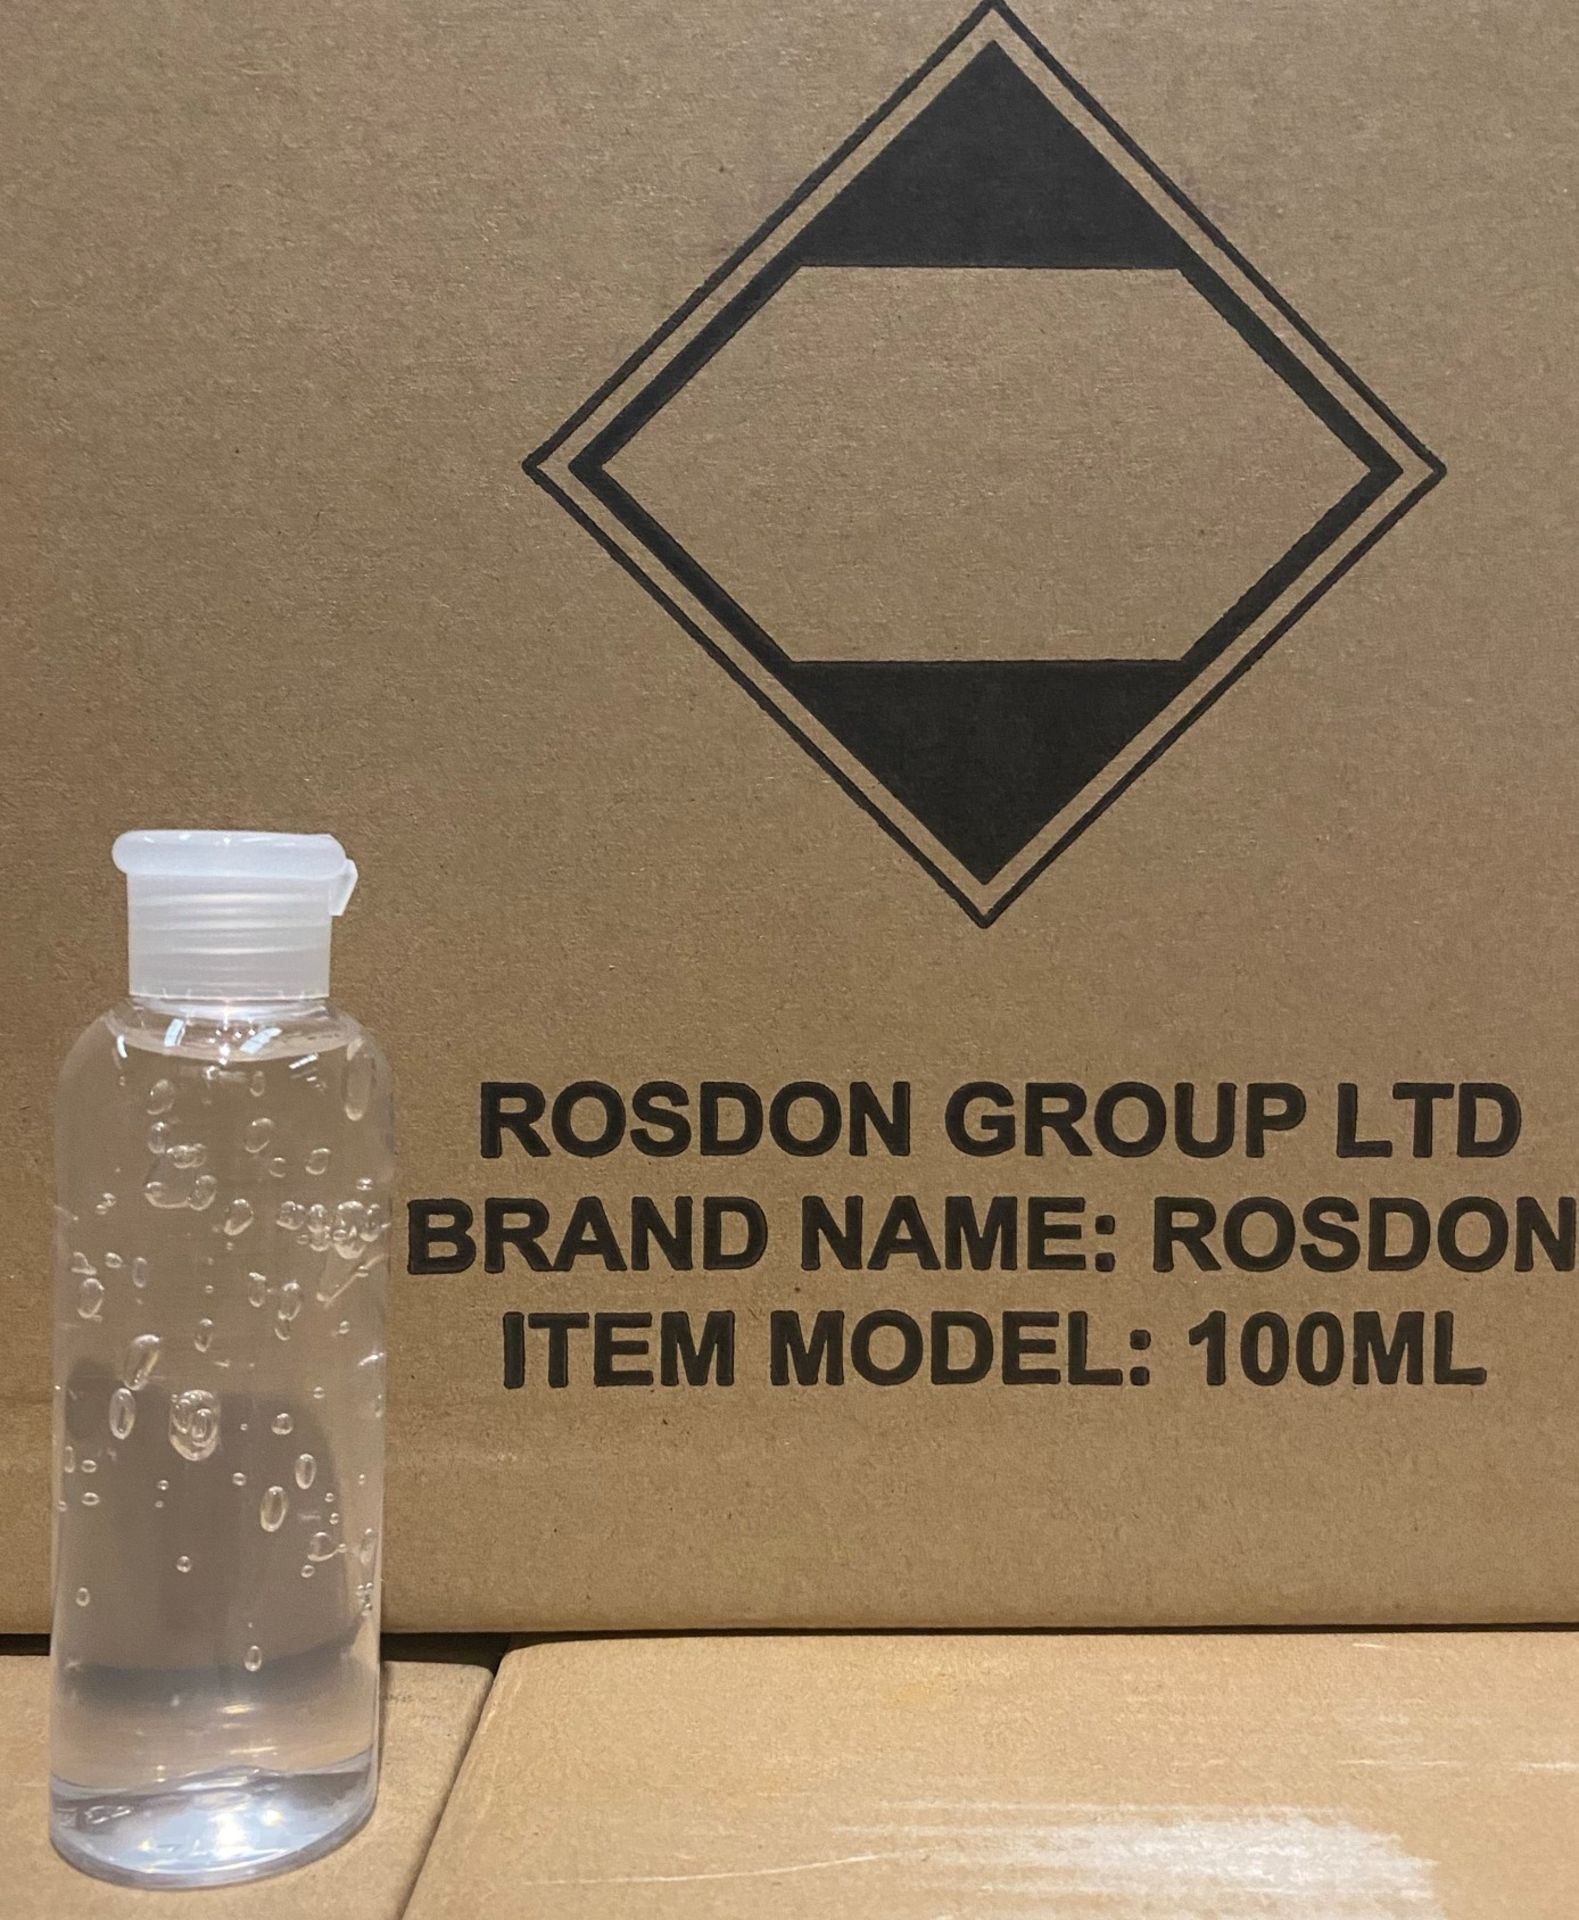 192 x 100ml Rosdon Group Ltd Hand Sanitiser Gel (Unlabelled clear plastic bottles) - 1 outer box